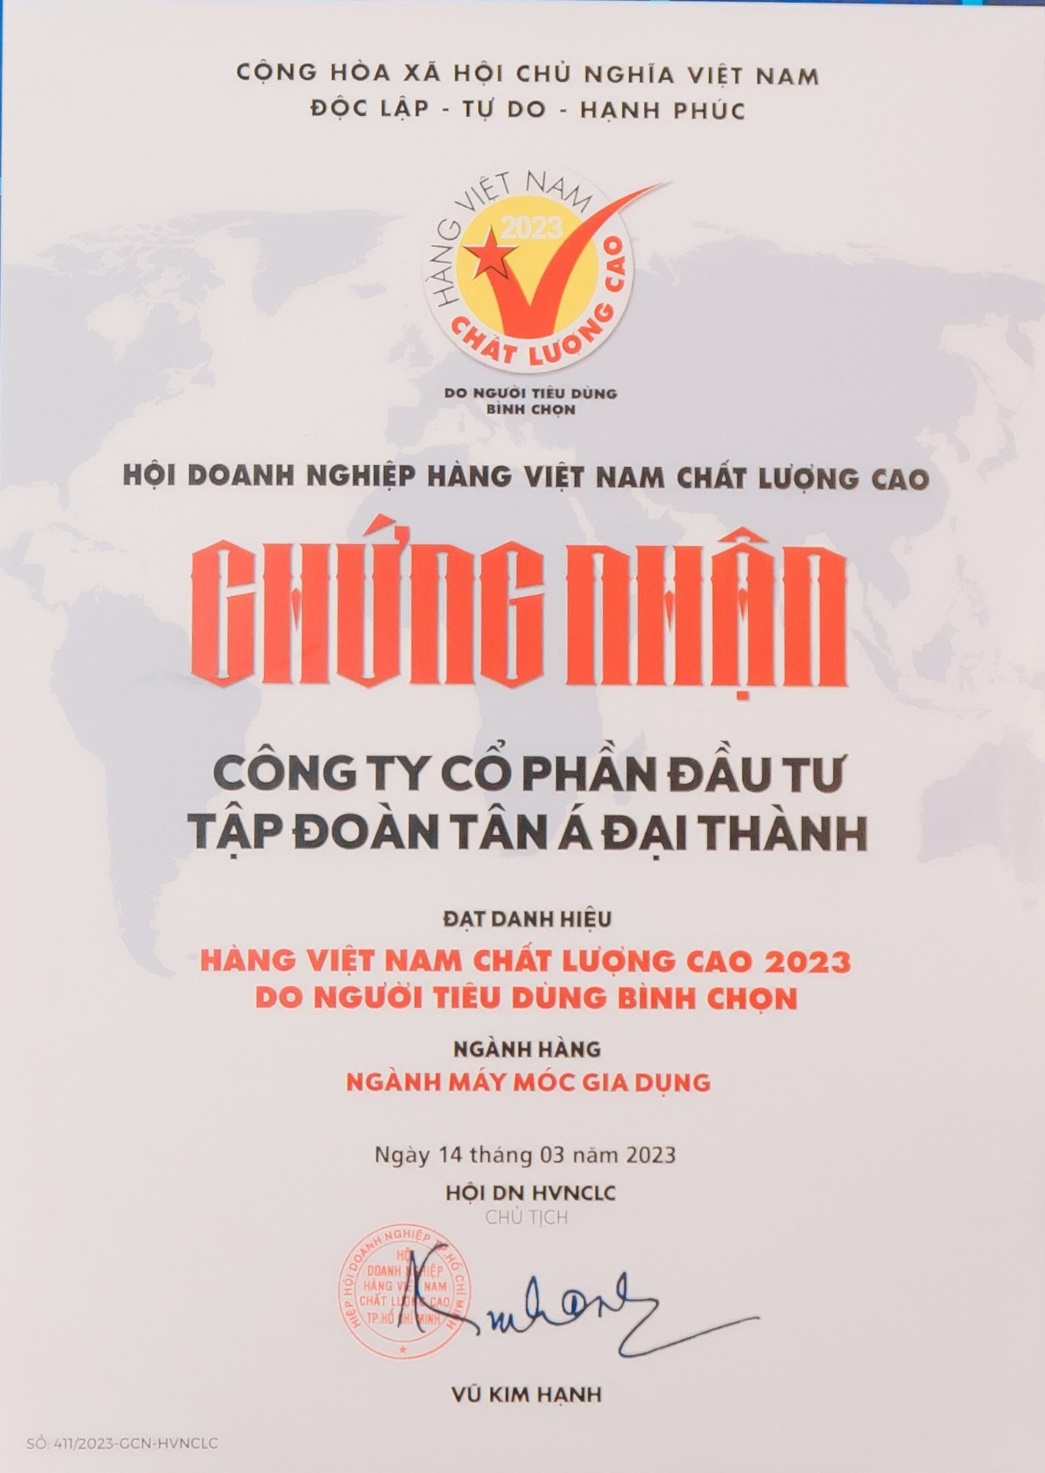 Tân Á Đại Thành: Gần 20 năm liên tiếp được tôn vinh “Hàng Việt Nam chất lượng cao” - Ảnh 2.